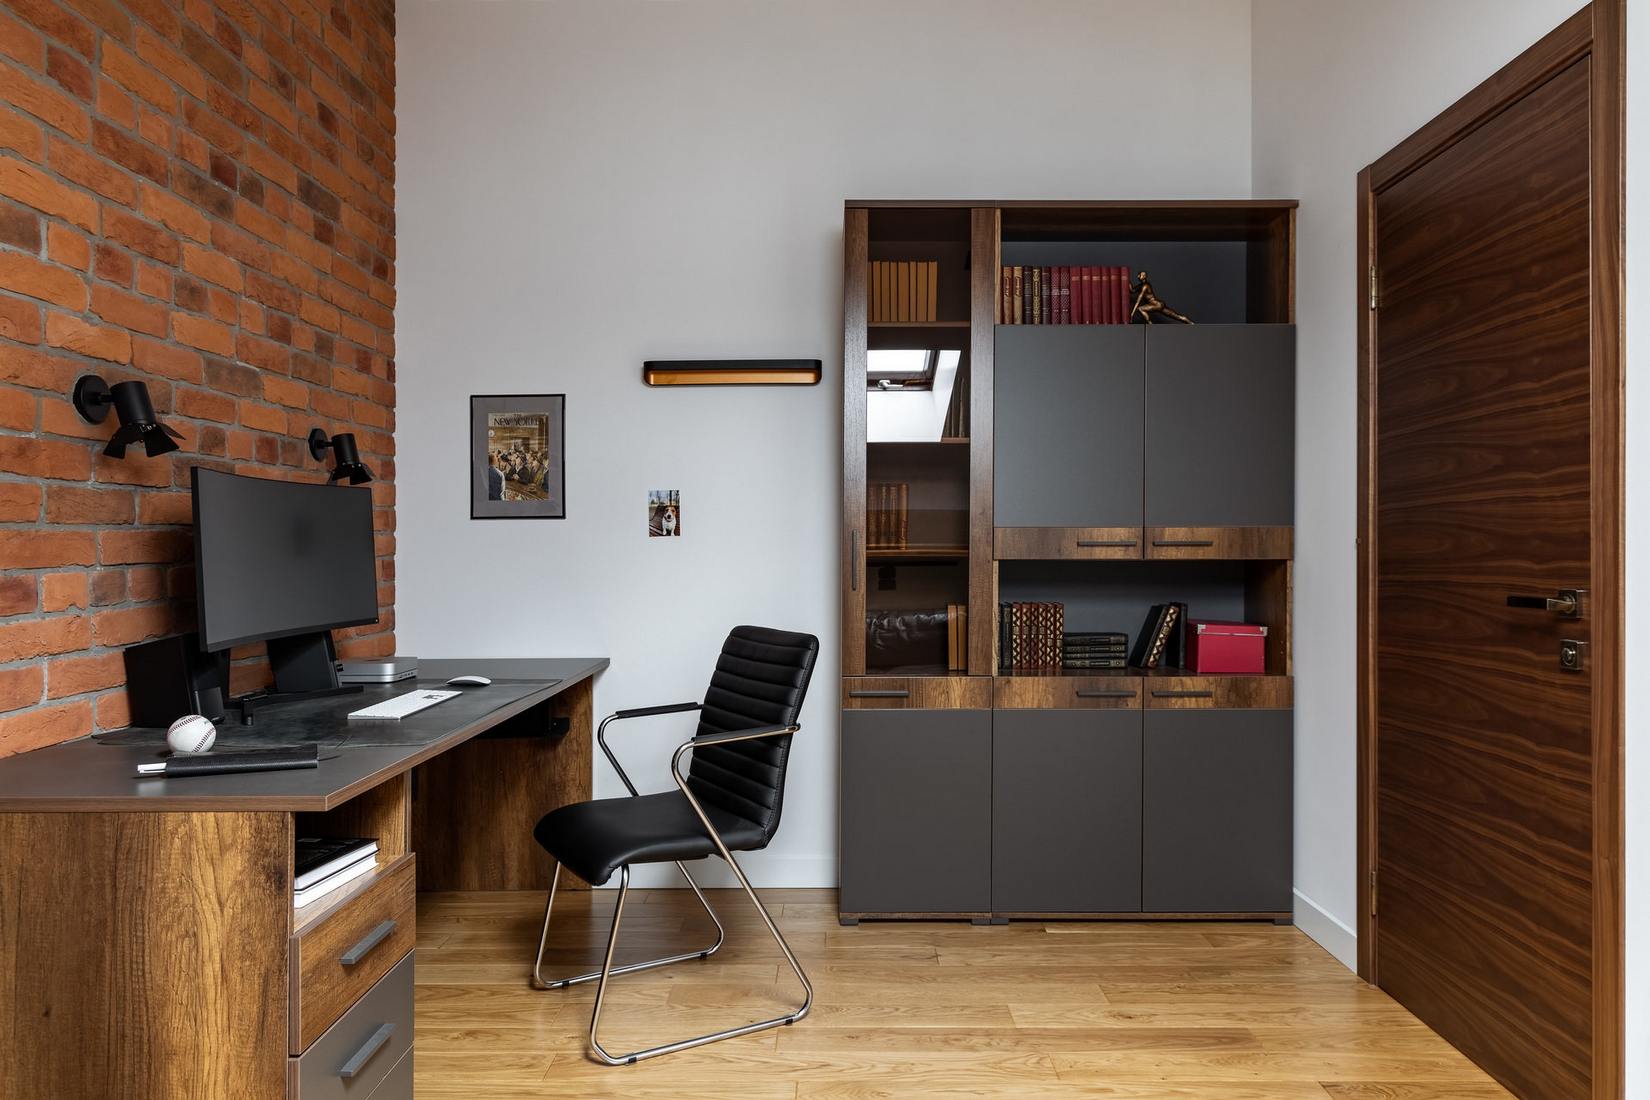 Phòng làm việc cũng sử dụng gạch ốp tường để tạo cảm giác thô sơ và kết nối với khu vực hàng lang lối vào. Hệ thống bàn và tủ gỗ mang vẻ đẹp cổ điển, bền vững với thời gian.